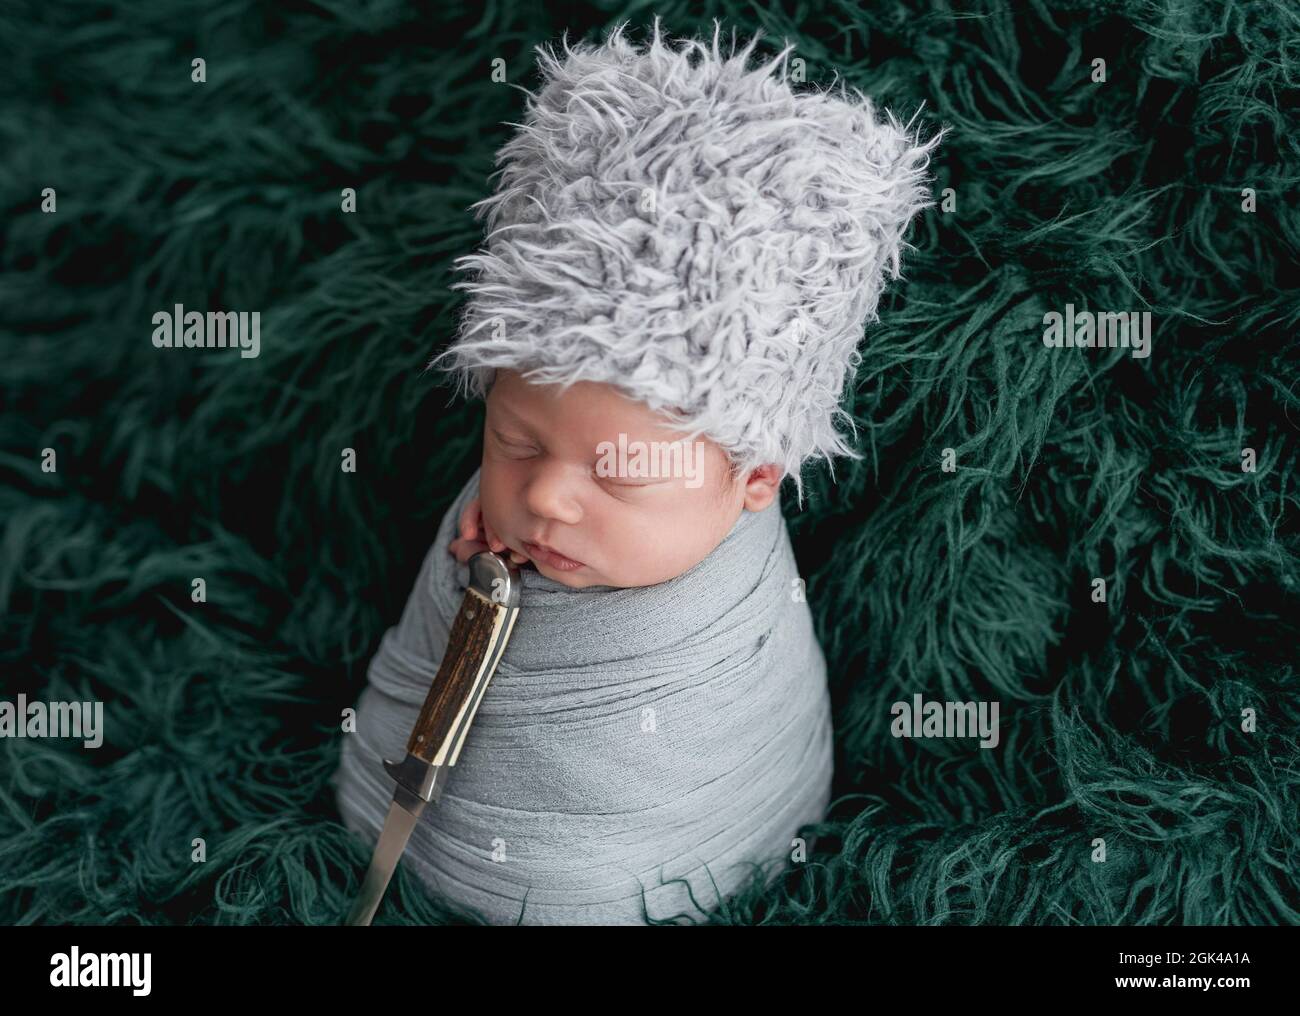 Nouveau-né dans un chapeau ethnique dormant avec un poignard sur fond vert Banque D'Images